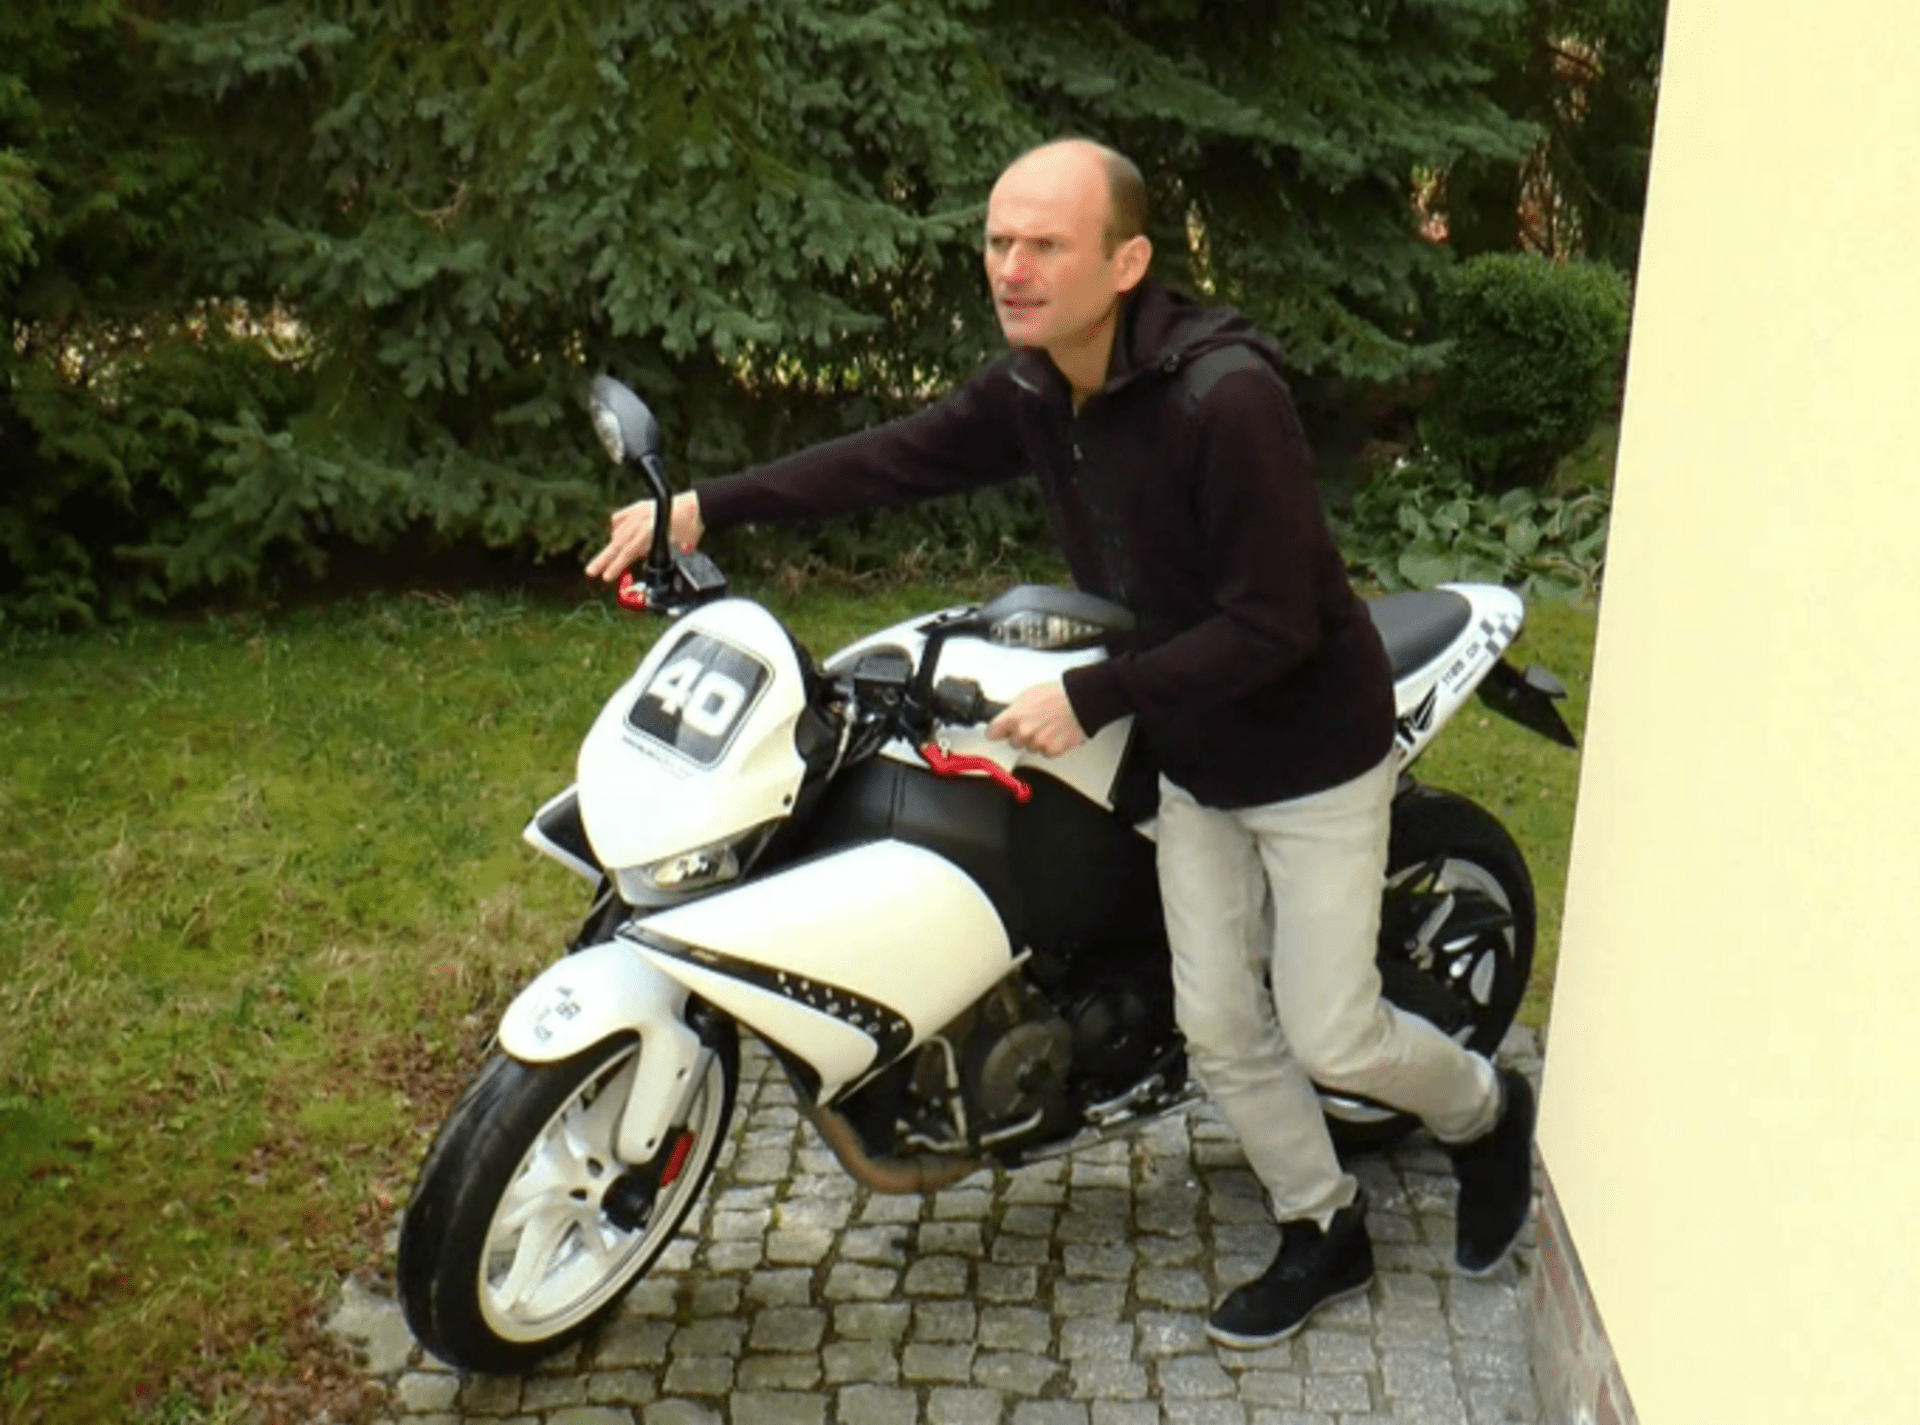 Herec Dalibor Gondík už rok nesedl na svou milovanou motorku. Podívejte se, proč!